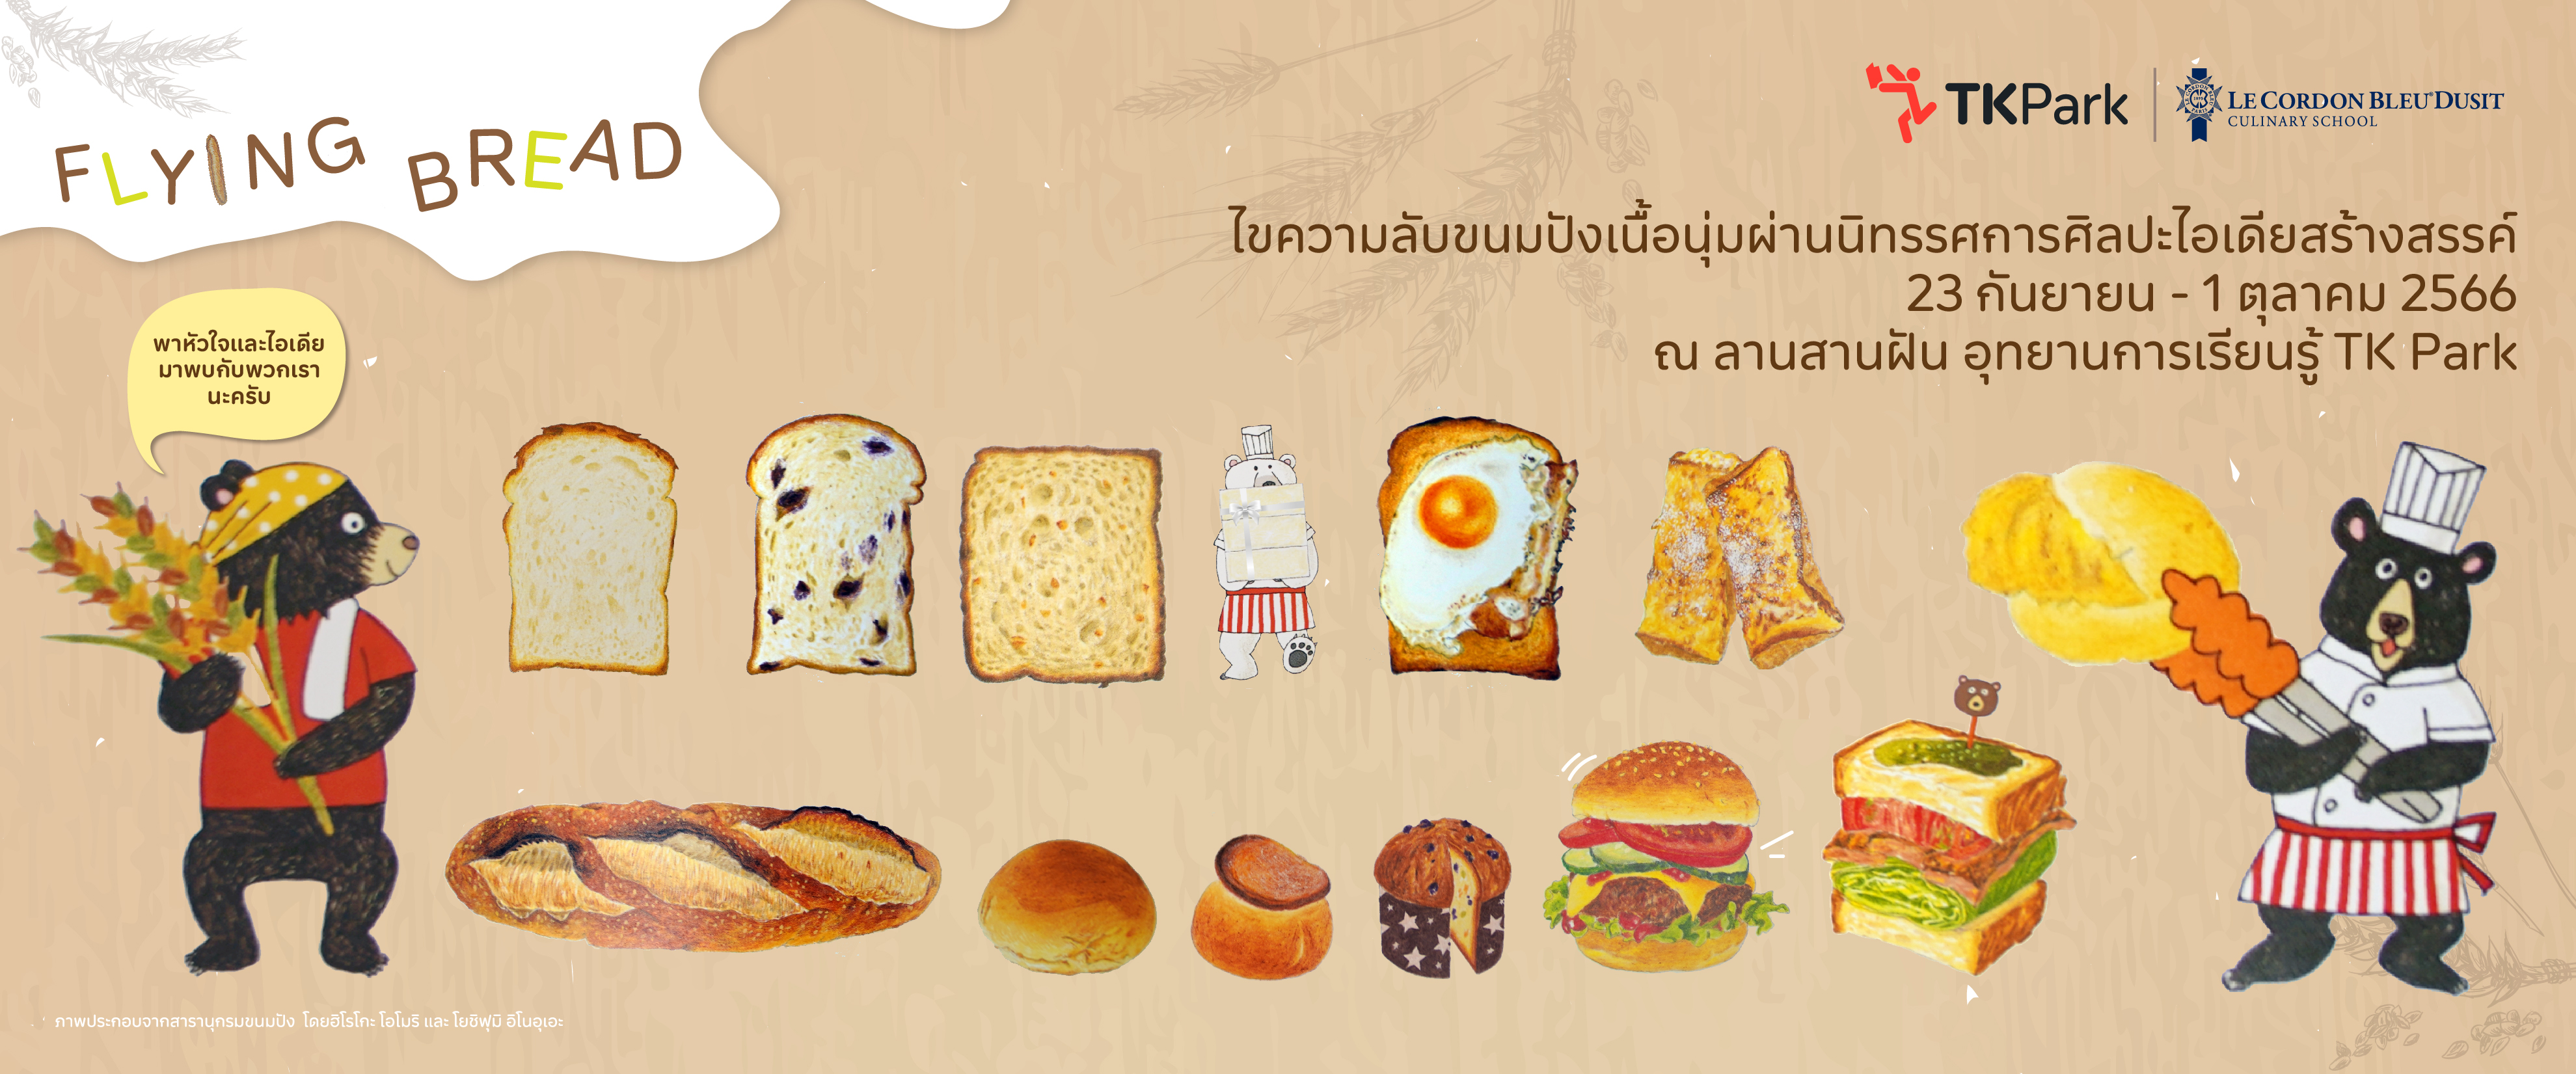 Fly-bread_WebMain.jpg